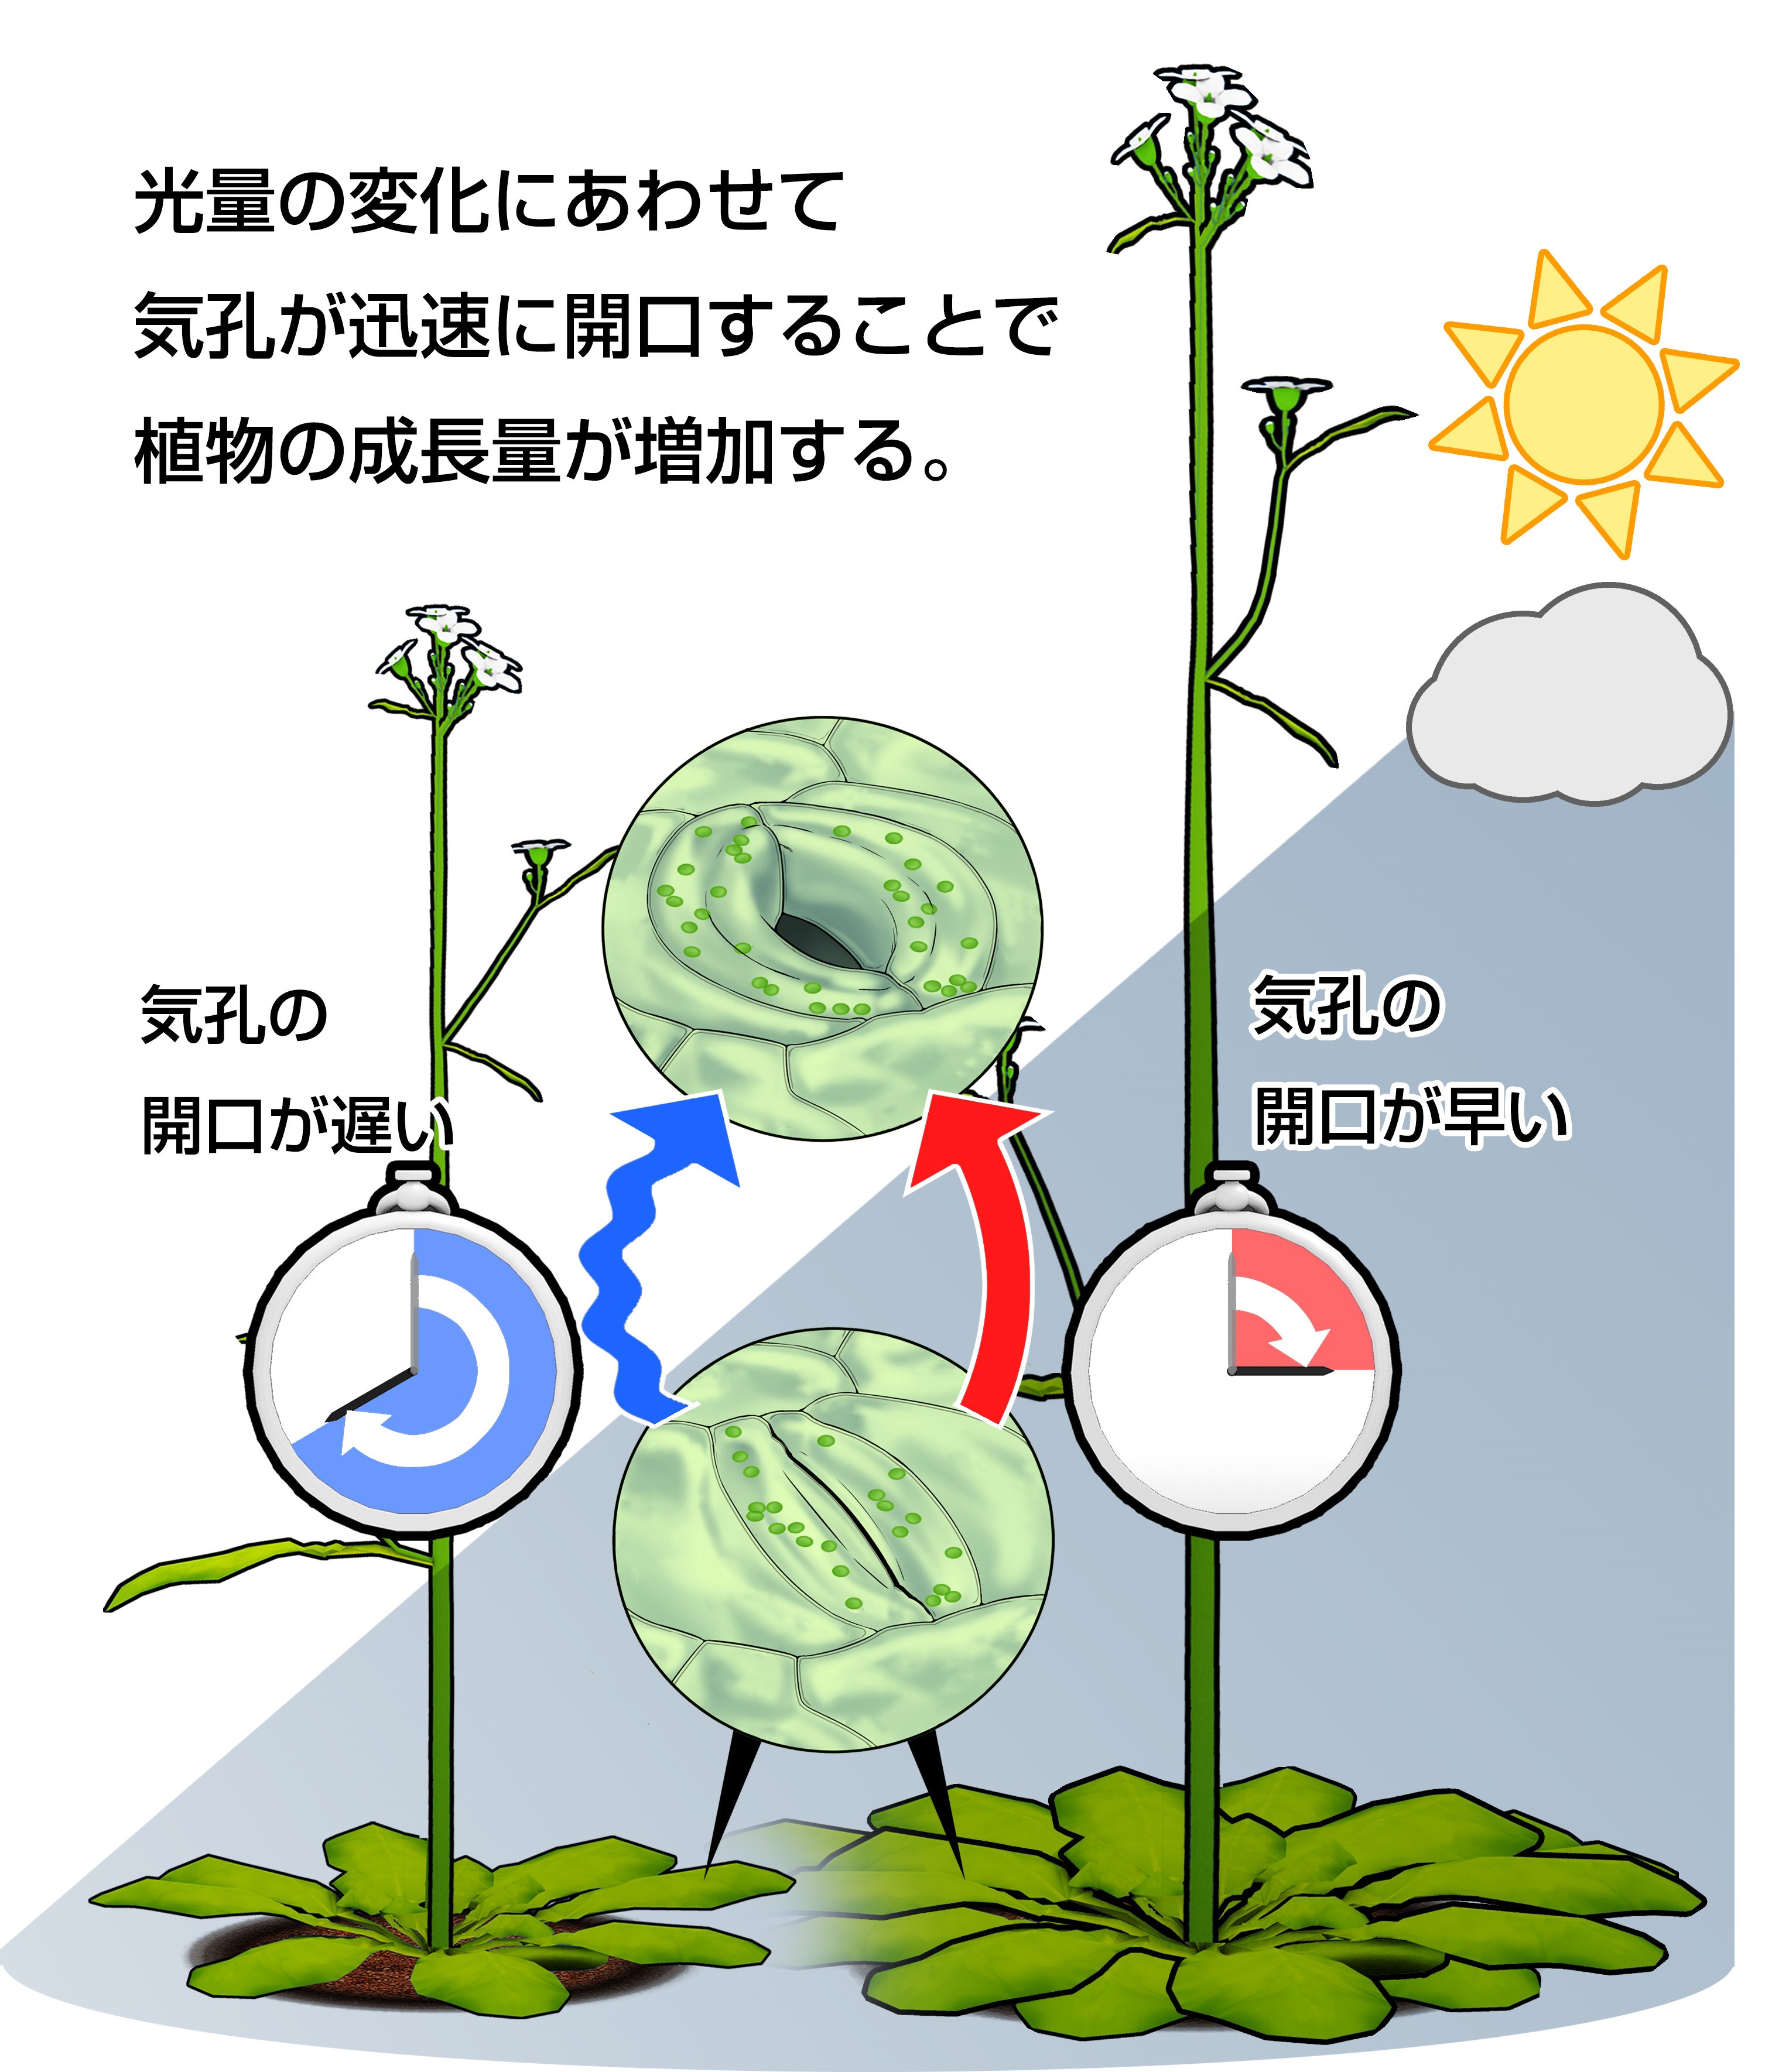 気孔をすばやく開かせることで 野外における植物の成長促進に成功 東京大学 大学院理学系研究科 理学部